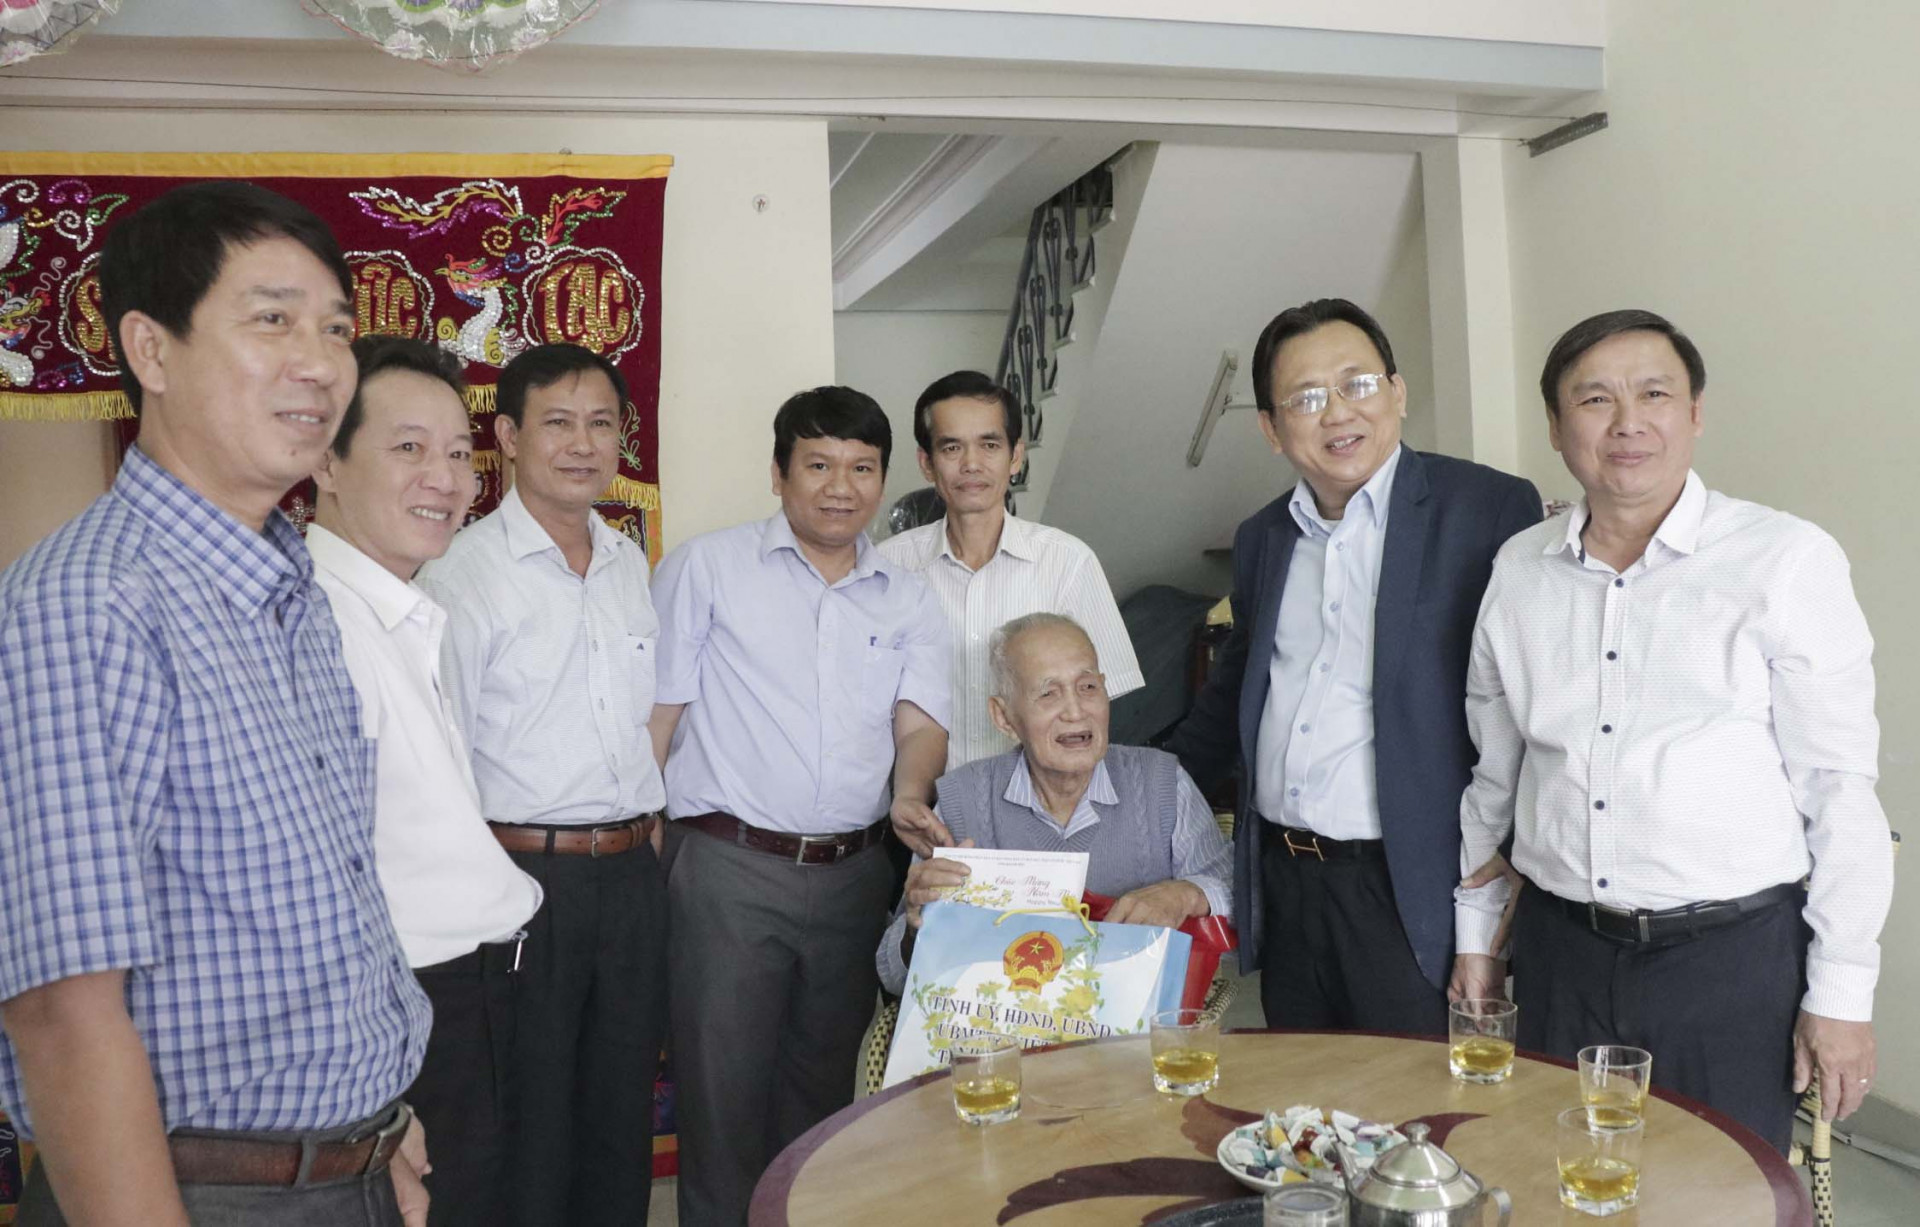 Ông Lê Hữu Hoàng trao quà Tết cho ông Nguyễn Nhánh - người hoạt động kháng chiến bị nhiễm chất độc hóa học (xã Vạn Long